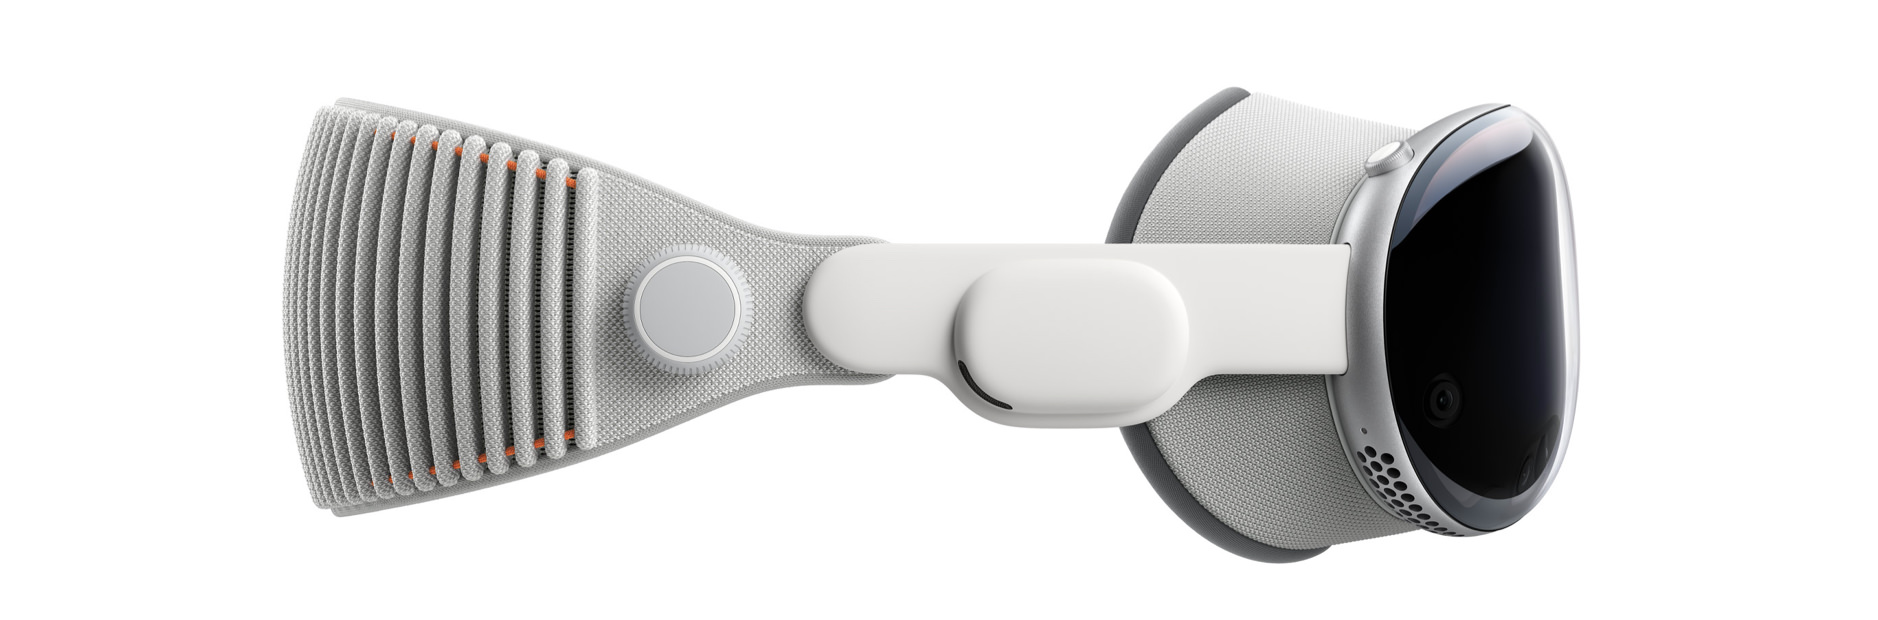 Das Bild zeigt Apple Vision Pro mit einem grauen, gewebten Kopfband, einem runden, silbernen Bedienelement an der Seite und einem schwarzen, glänzenden Display-Teil auf der rechten Seite, welches ein Bildschirm für virtuelle Realität ist.